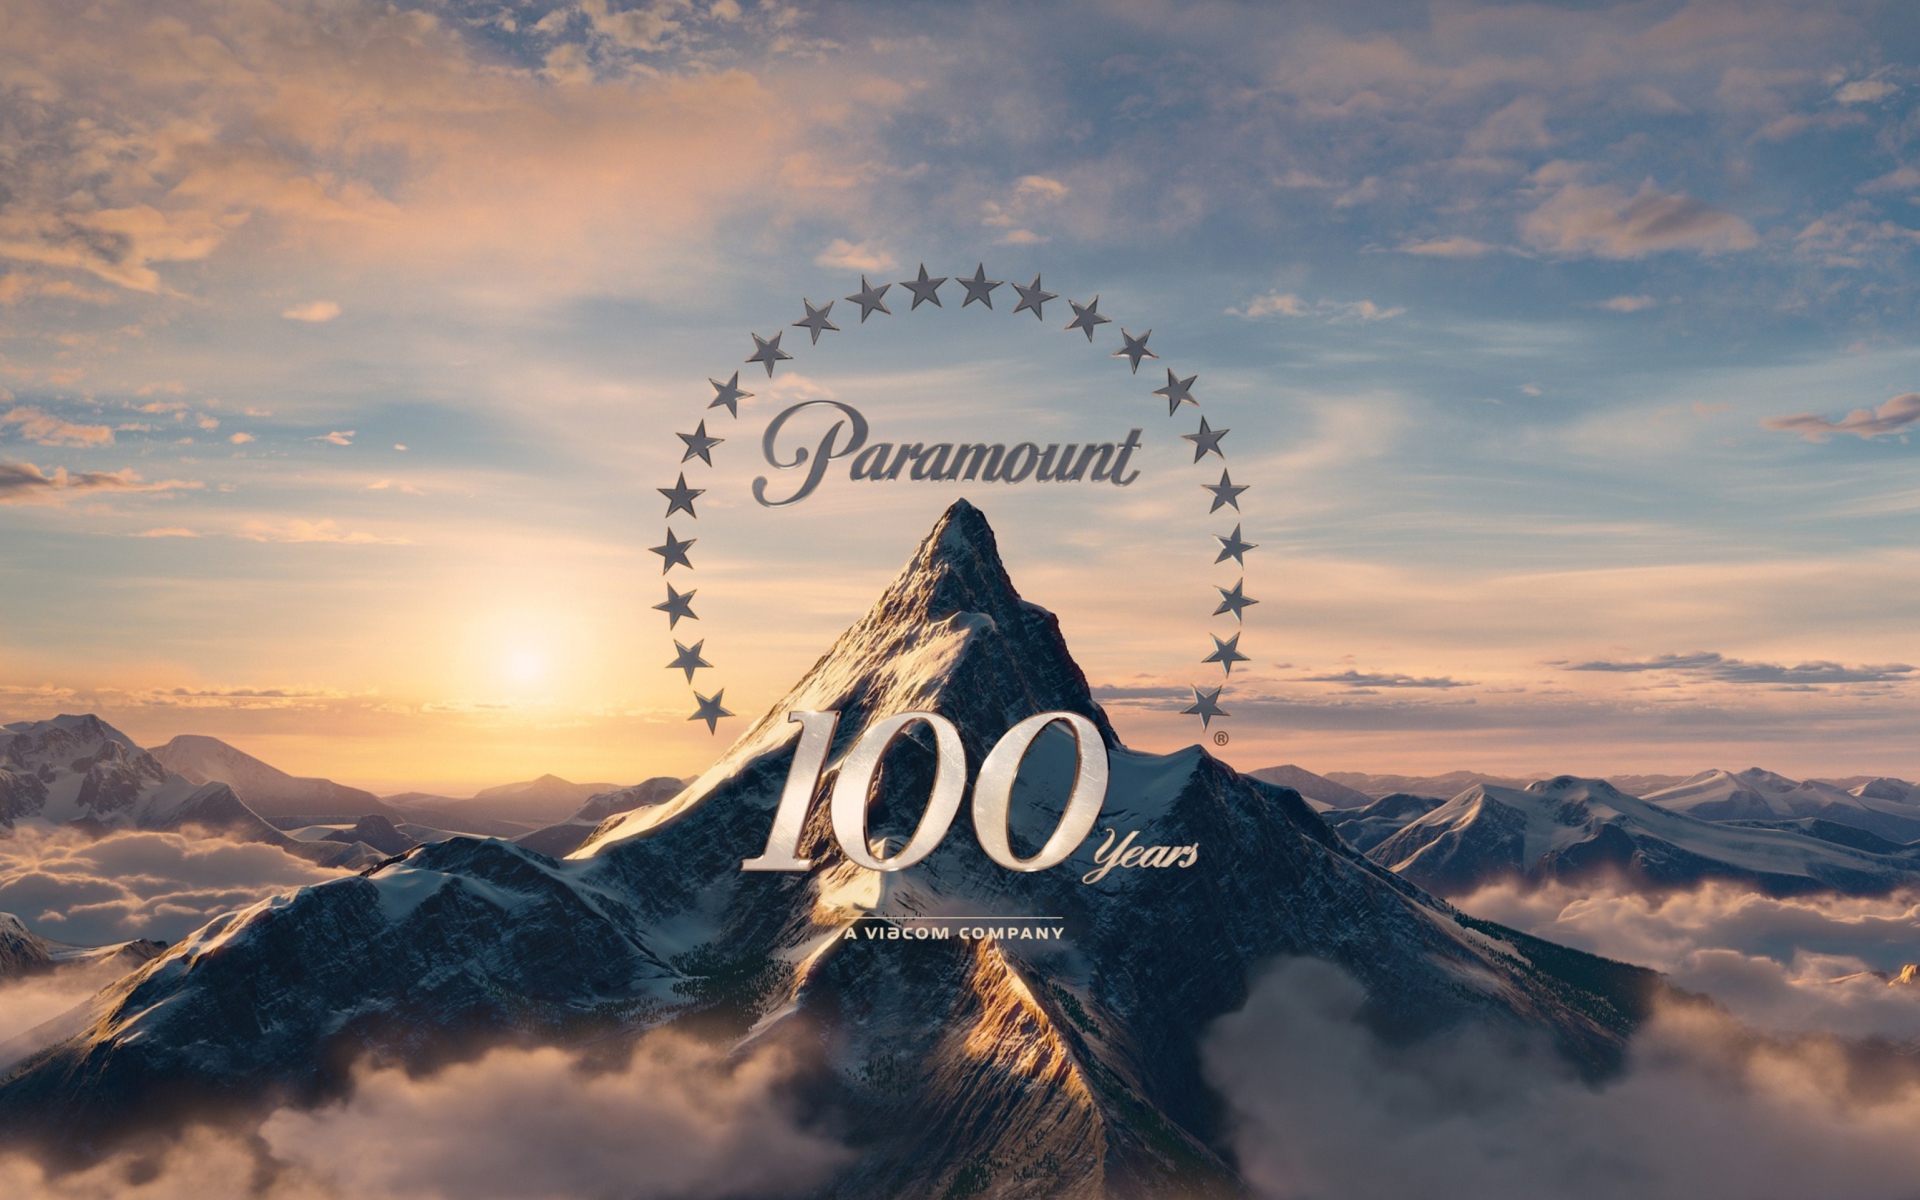 Обои Paramount Pictures 100 Years 1920x1200